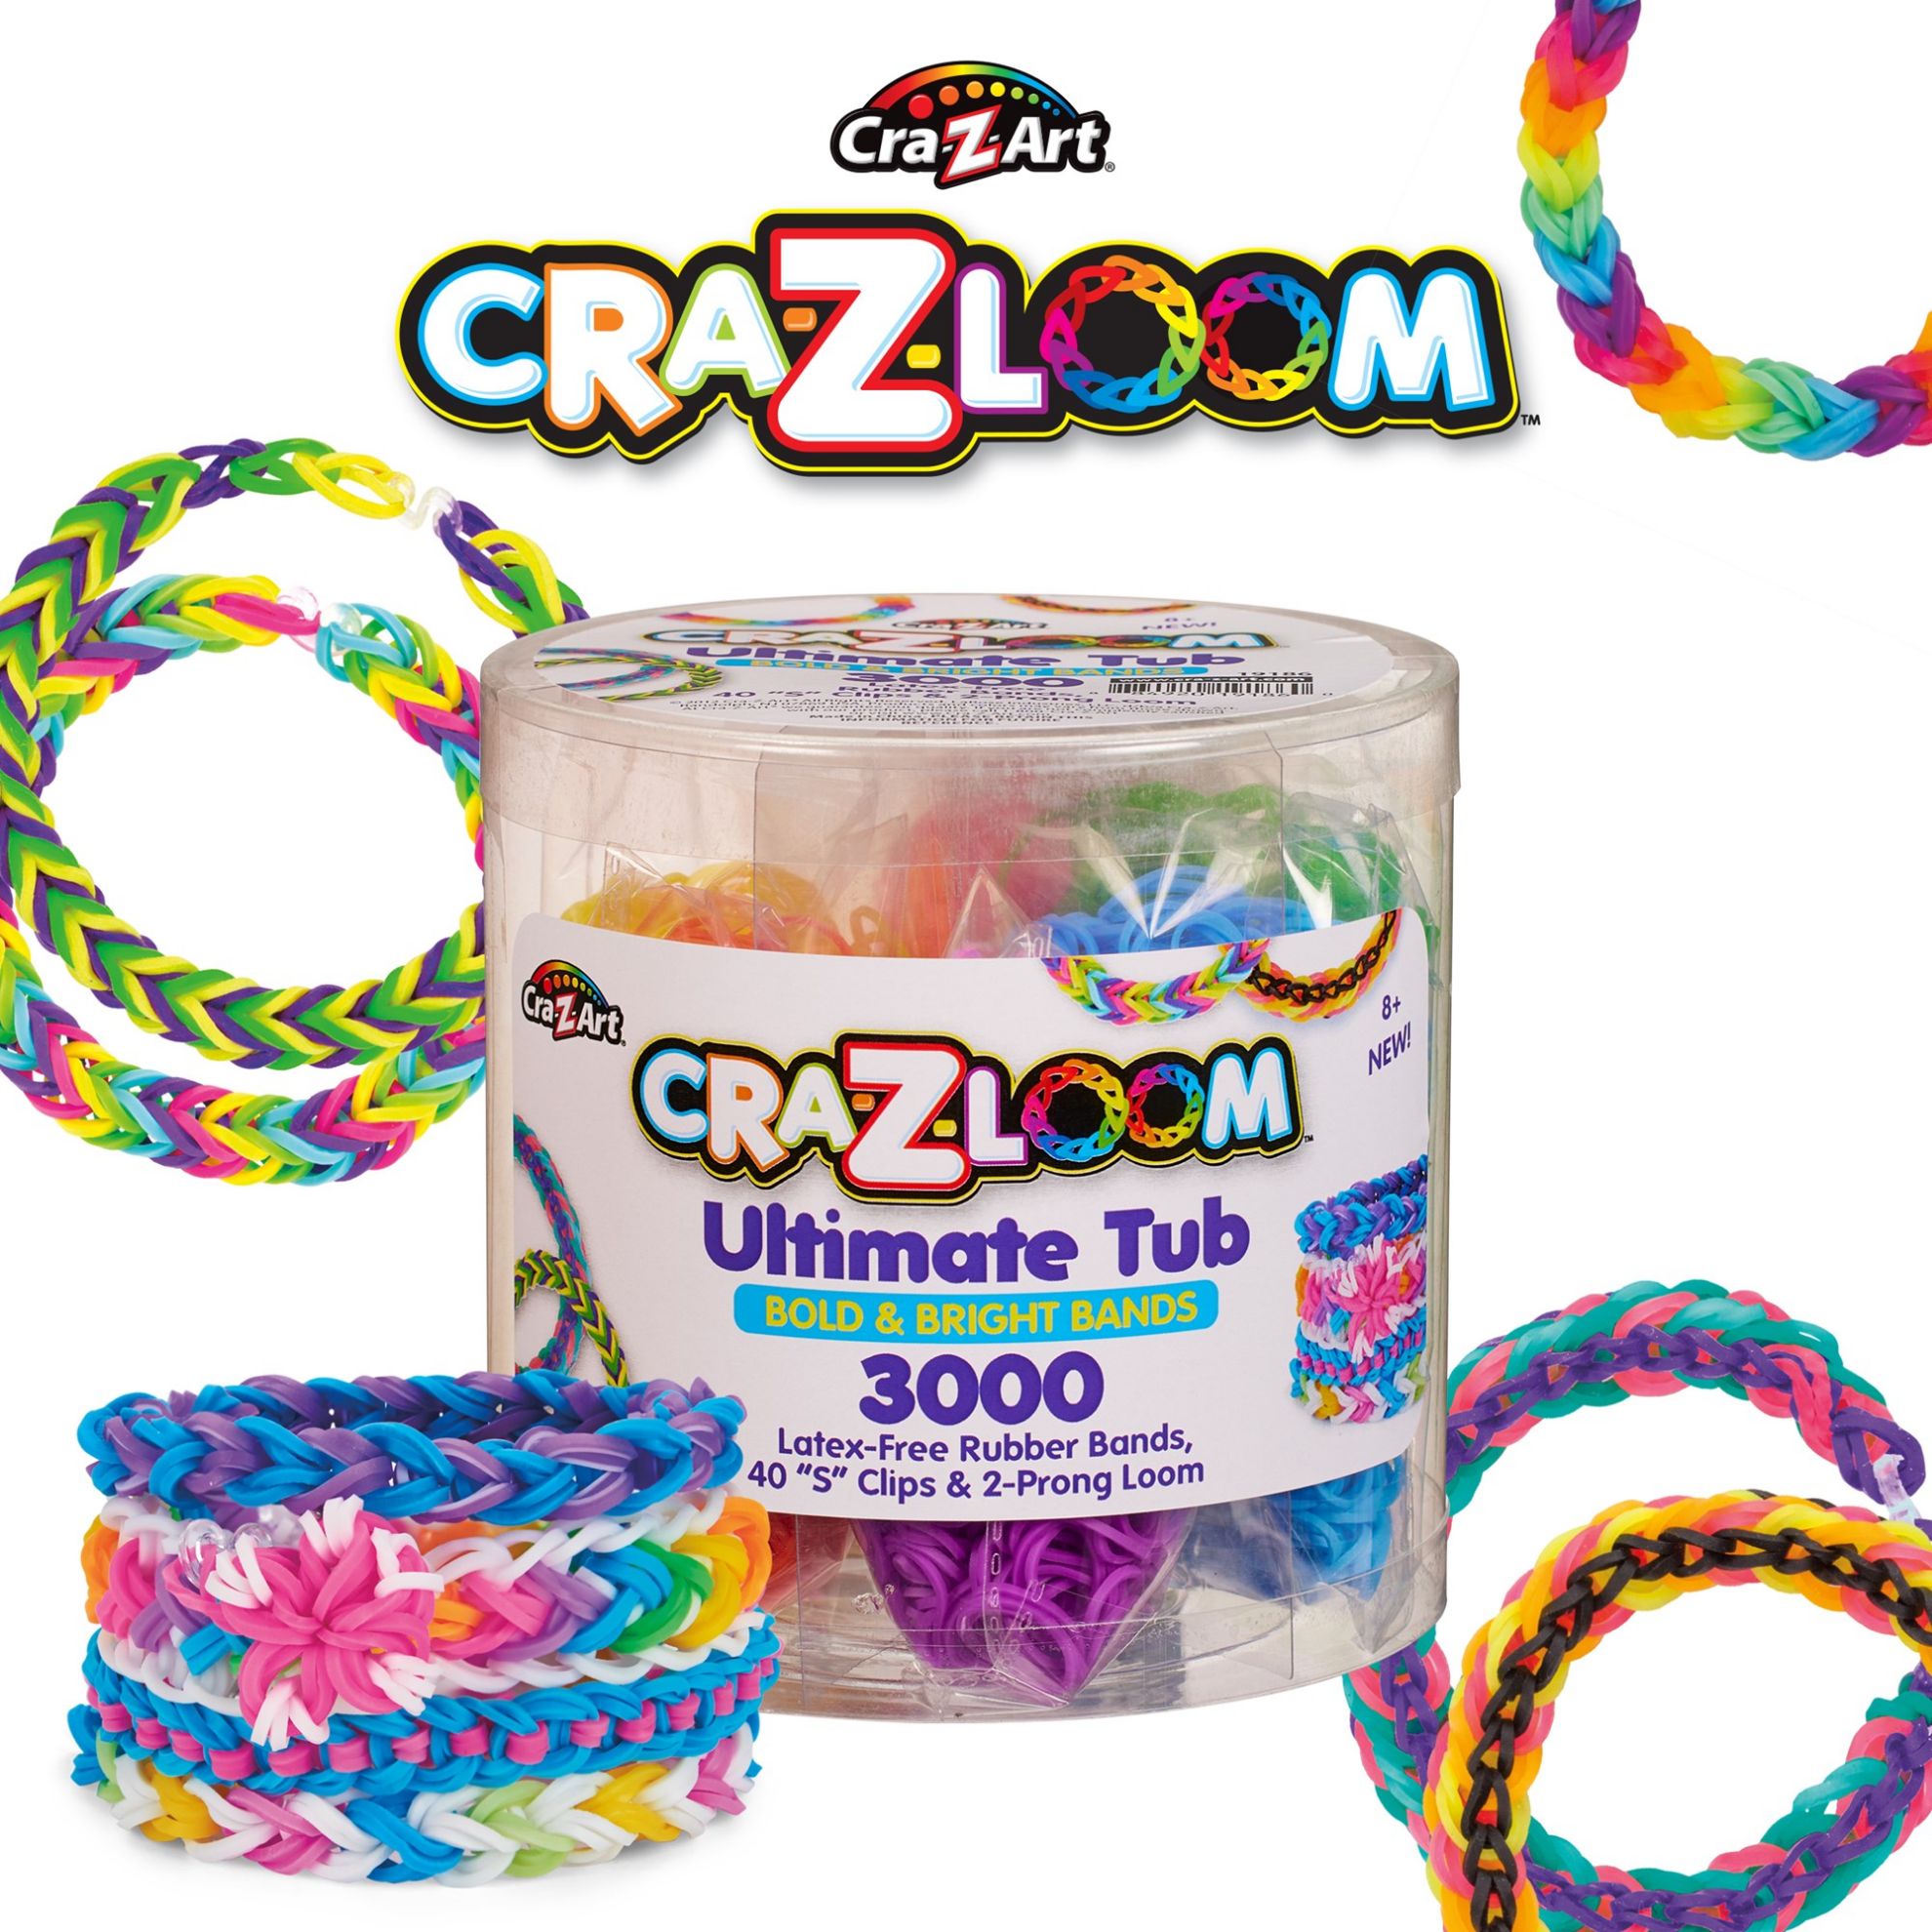 Cra-Z-Loom Ultimate Tub